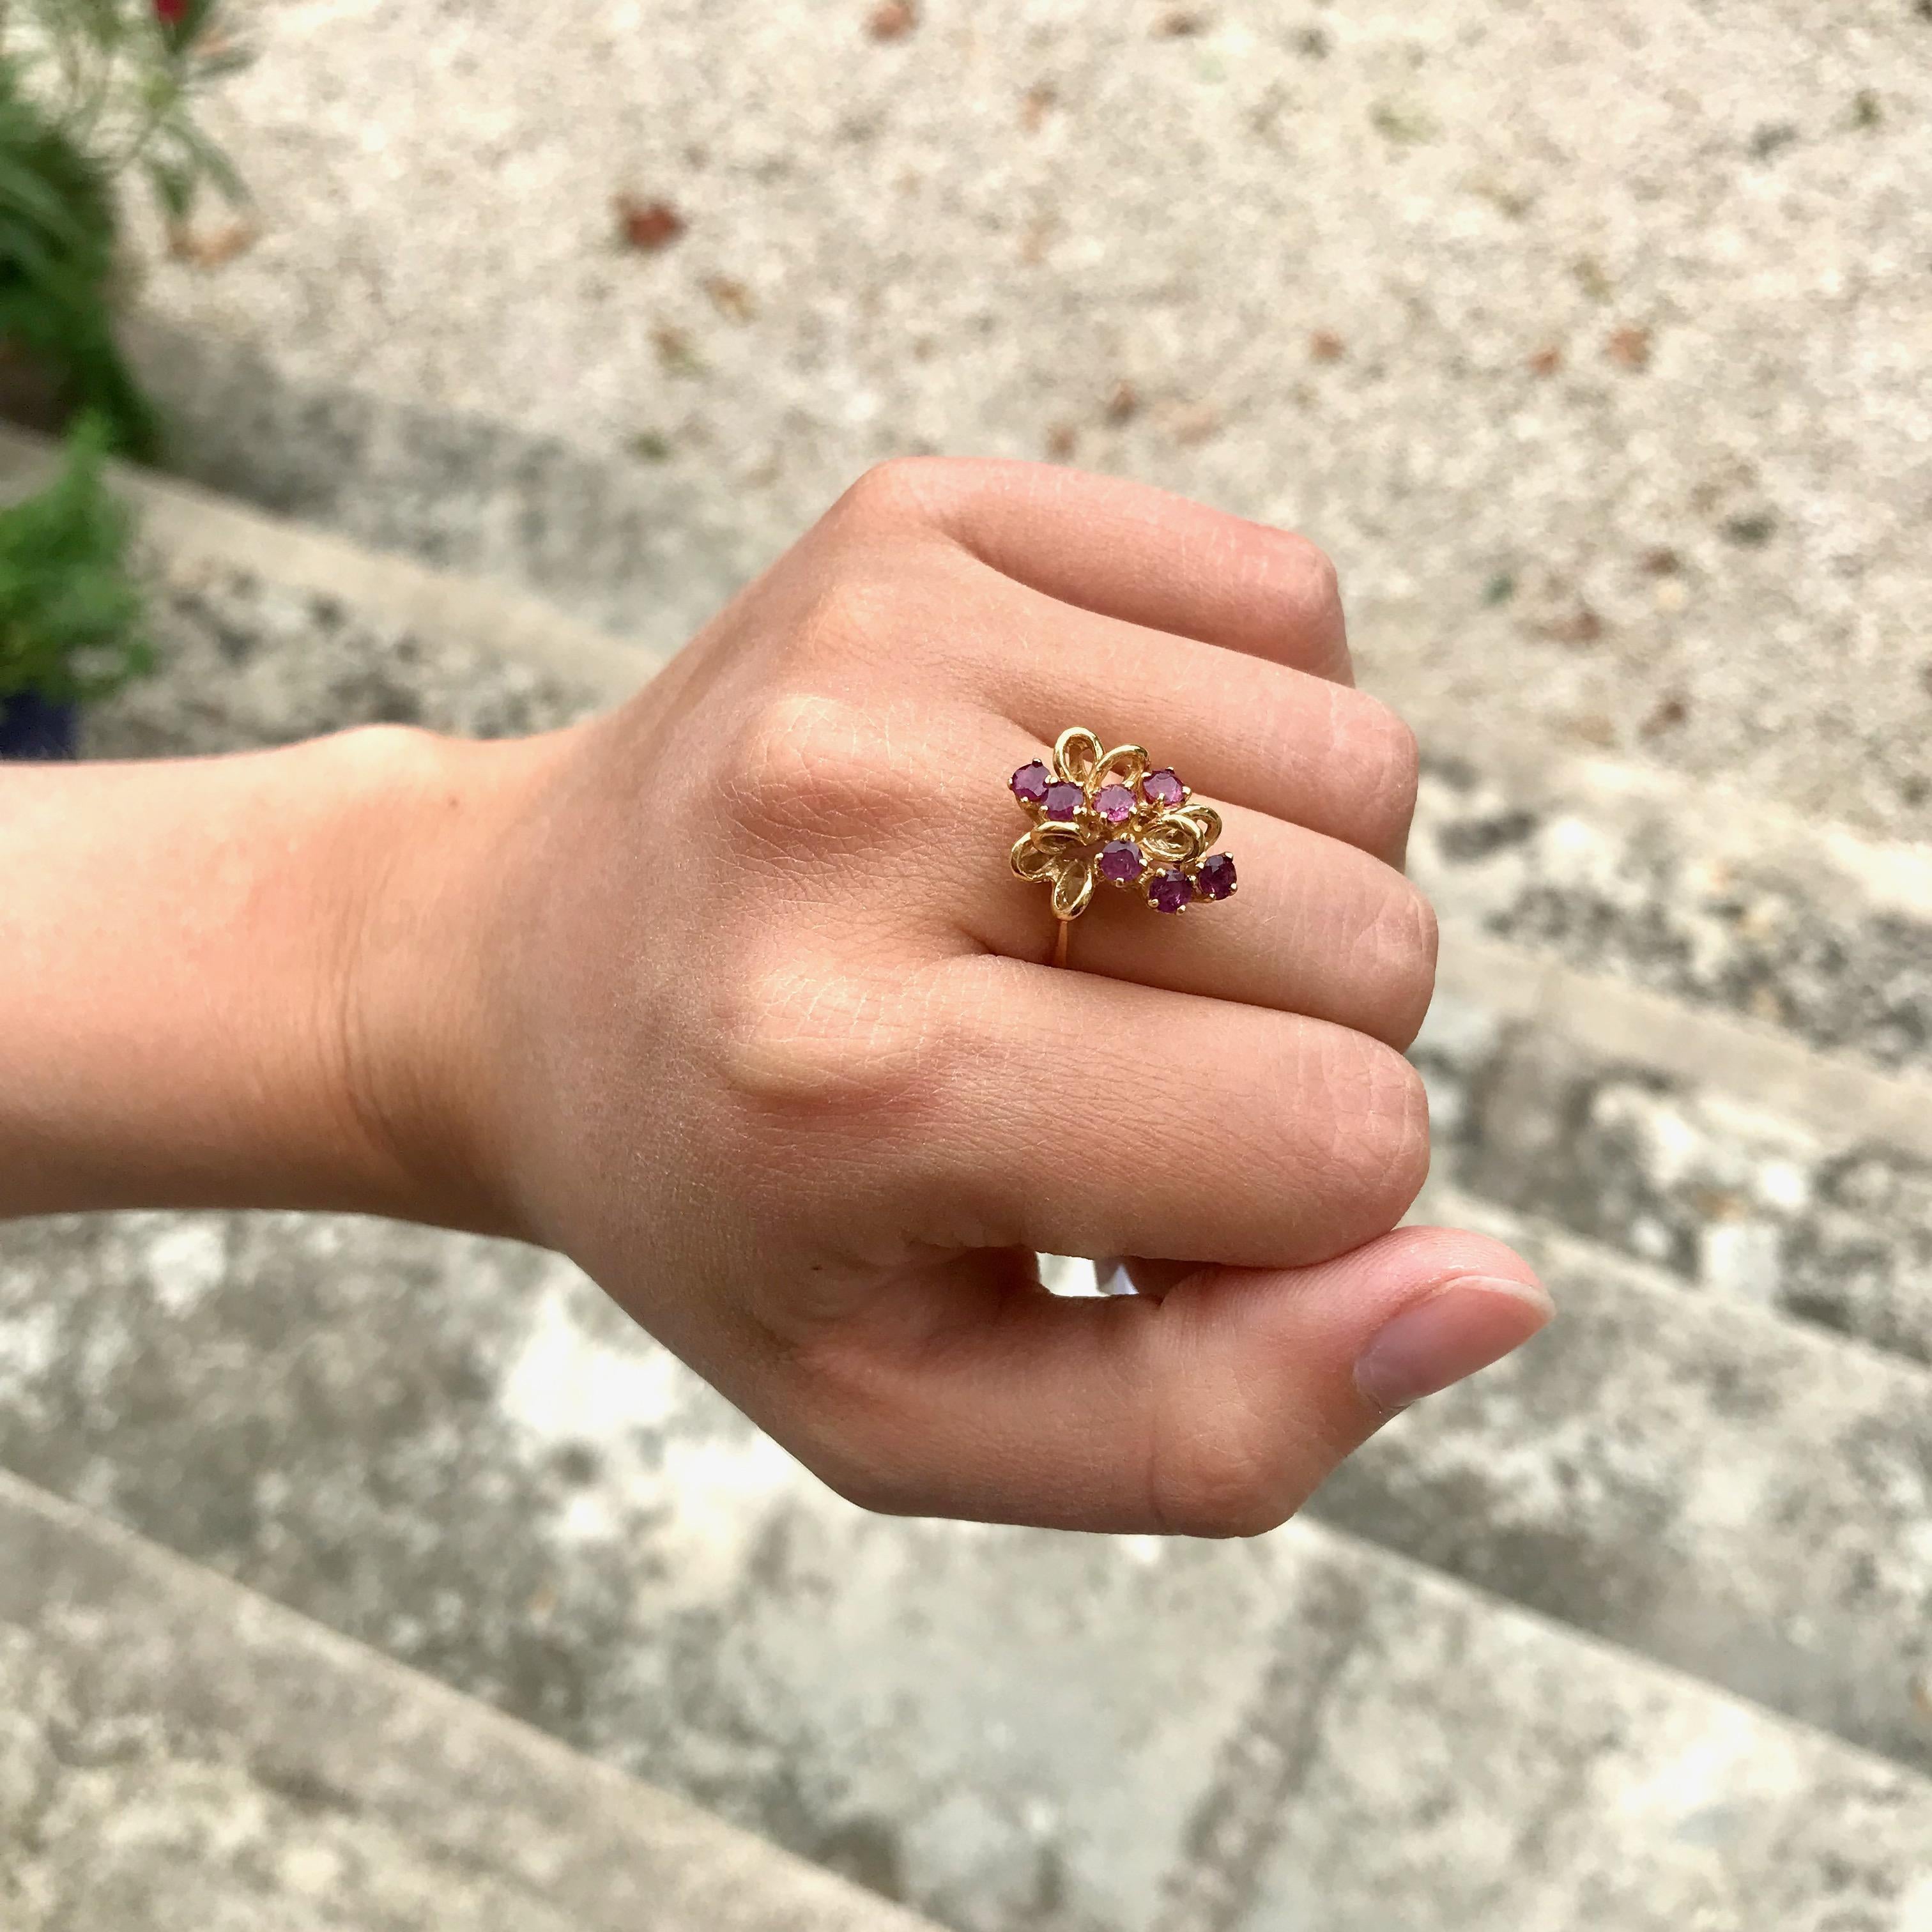 Ring aus 18 Kt Gelbgold mit einer stilisierten Traube, die mit 7 rosa Steinen besetzt ist. Ca. 1970er Jahre.
Einige Anzeichen von Verschleiß auf dem Gold und Steine.
Adlerkopfpunze für 18-karätiges Gold. Meisterzeichen.
Hergestellt in Frankreich 
FR